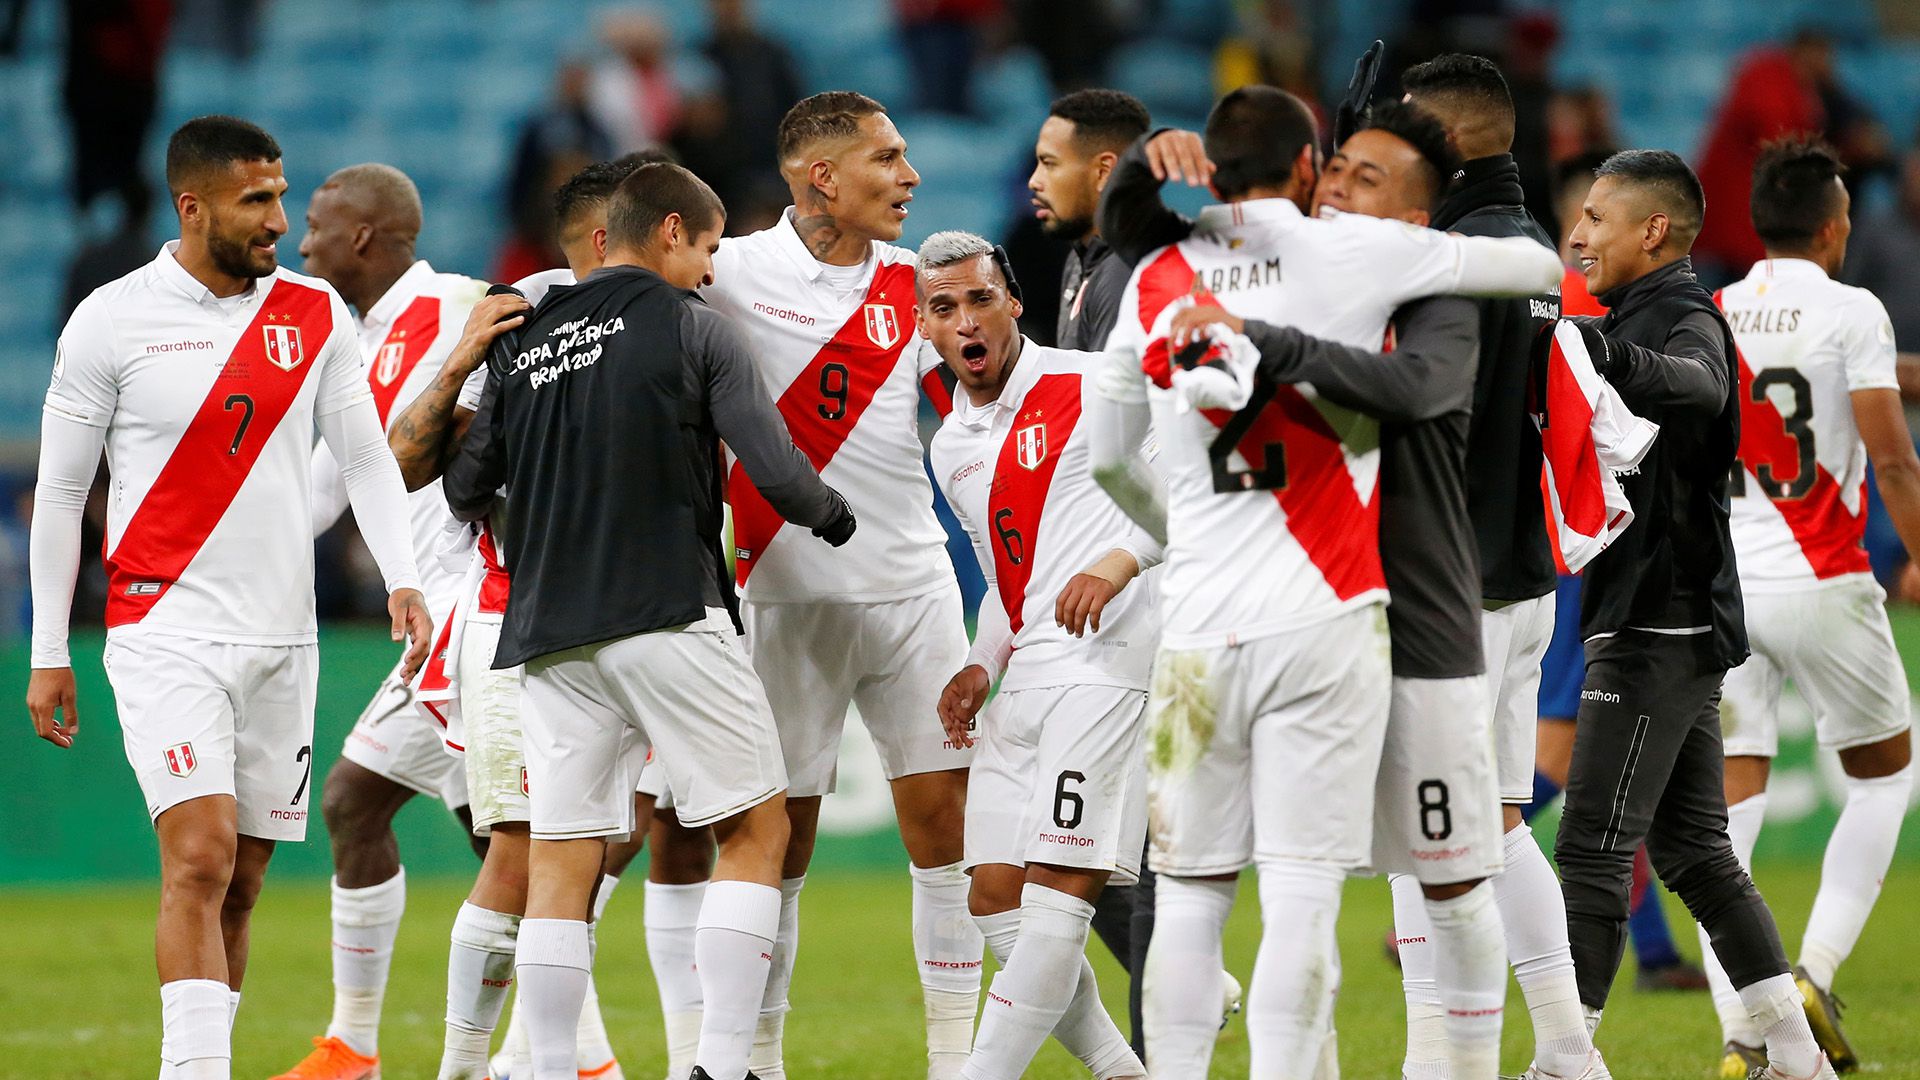 Perú hizo historia y accedió a una final de Copa América luego de 44 años (REUTERS/Diego Vara)